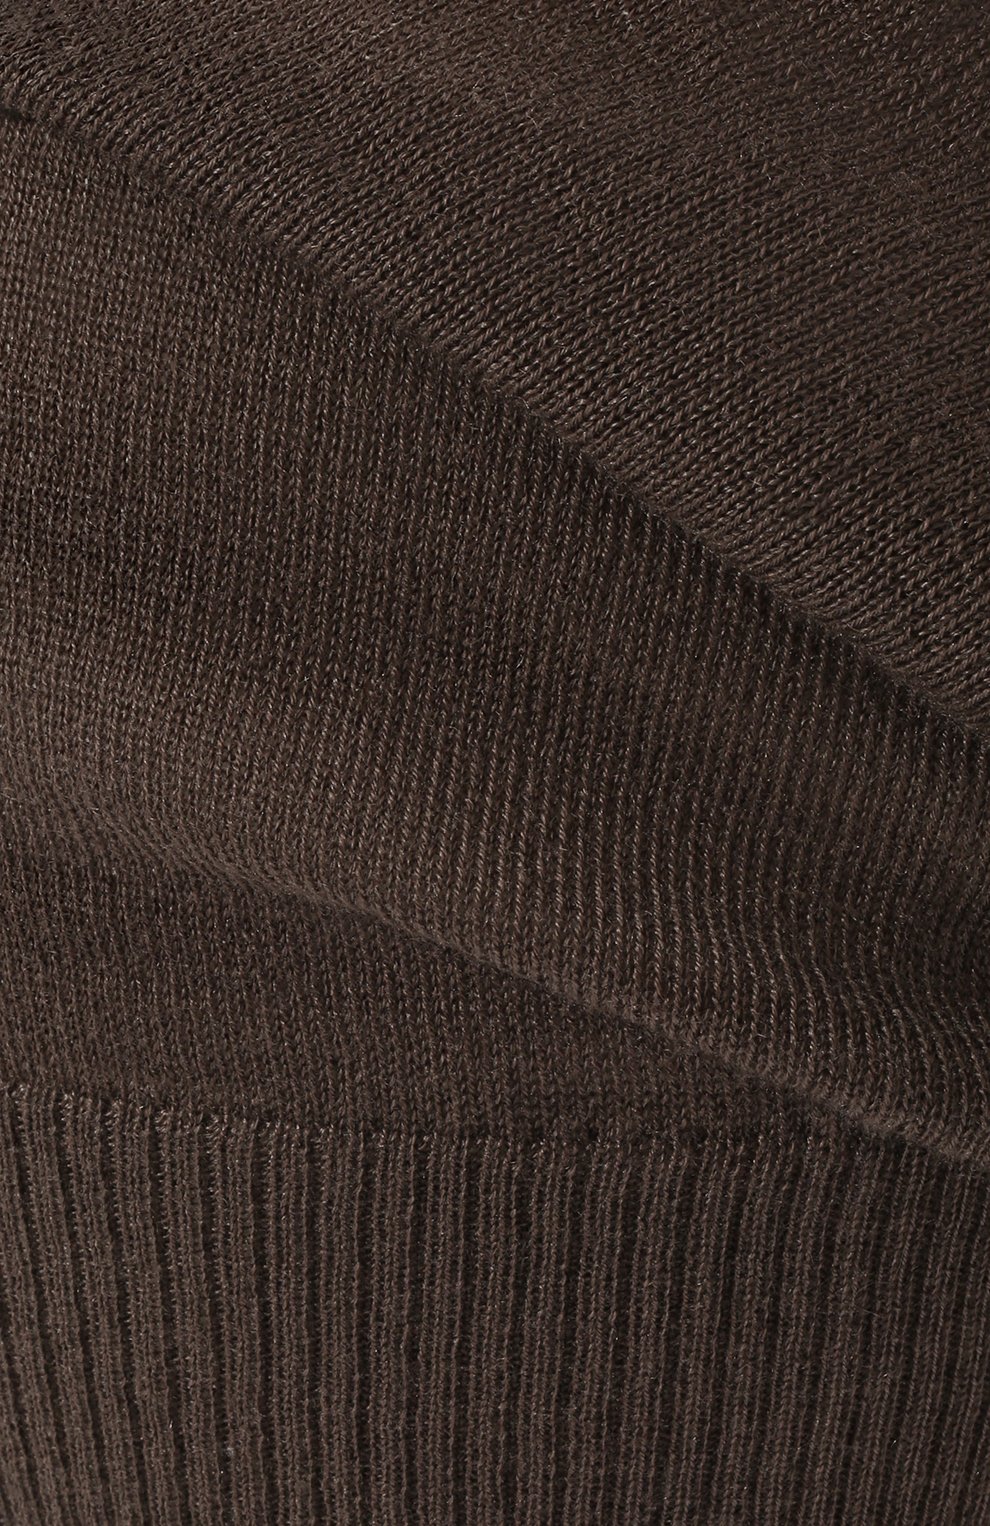 Мужская кашемировая шапка RICK OWENS коричневого цвета, арт. RU02B2493/WS | Фото 3 (Материал: Текстиль, Кашемир, Шерсть; Кросс-КТ: Трикотаж)